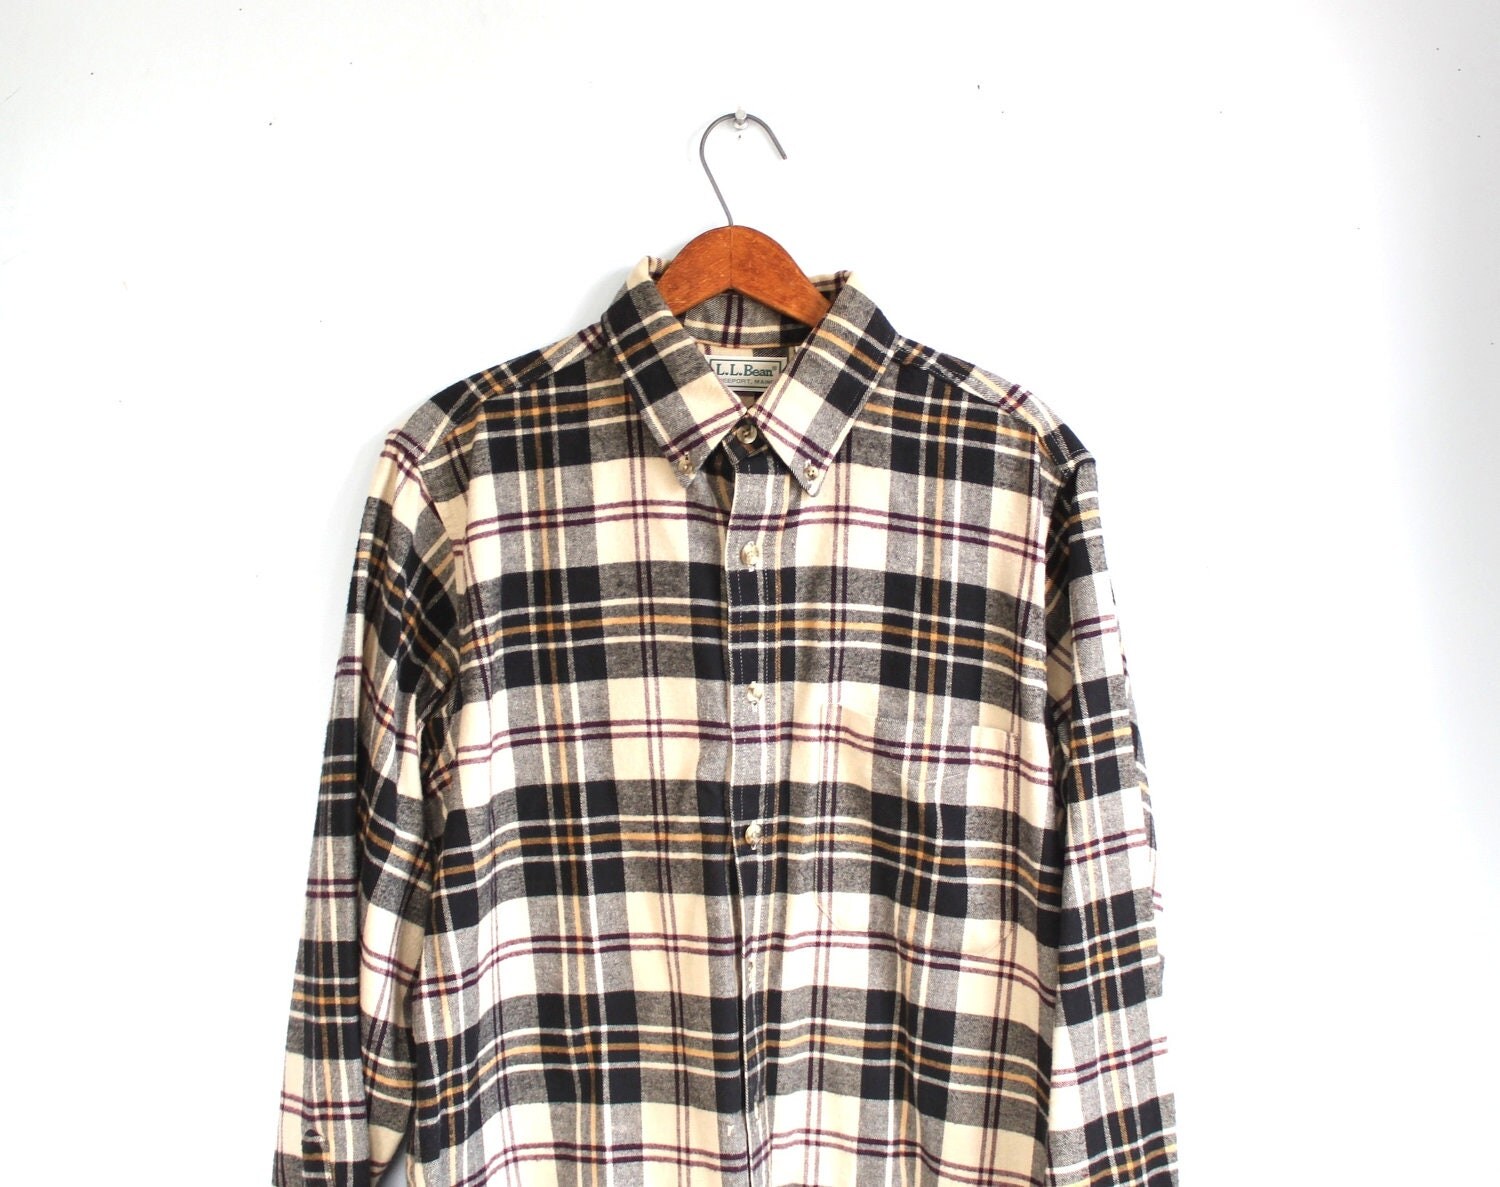 Sale / Vintage LL Bean flannel shirt. Men's med. Black